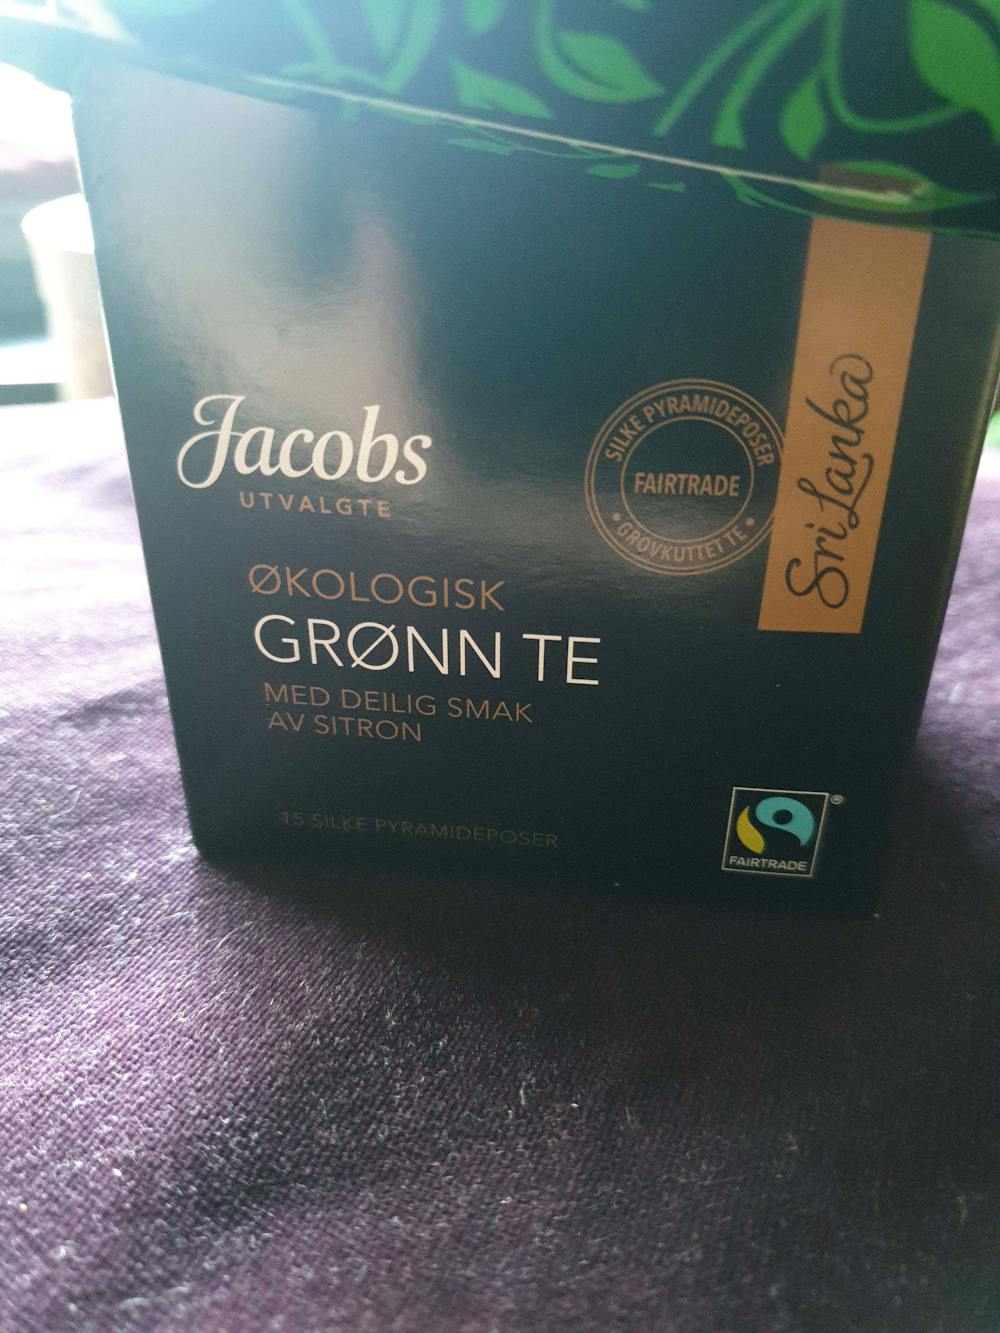 Økologisk grønn te med deilig smak av sitron, Jacobs utvalgte